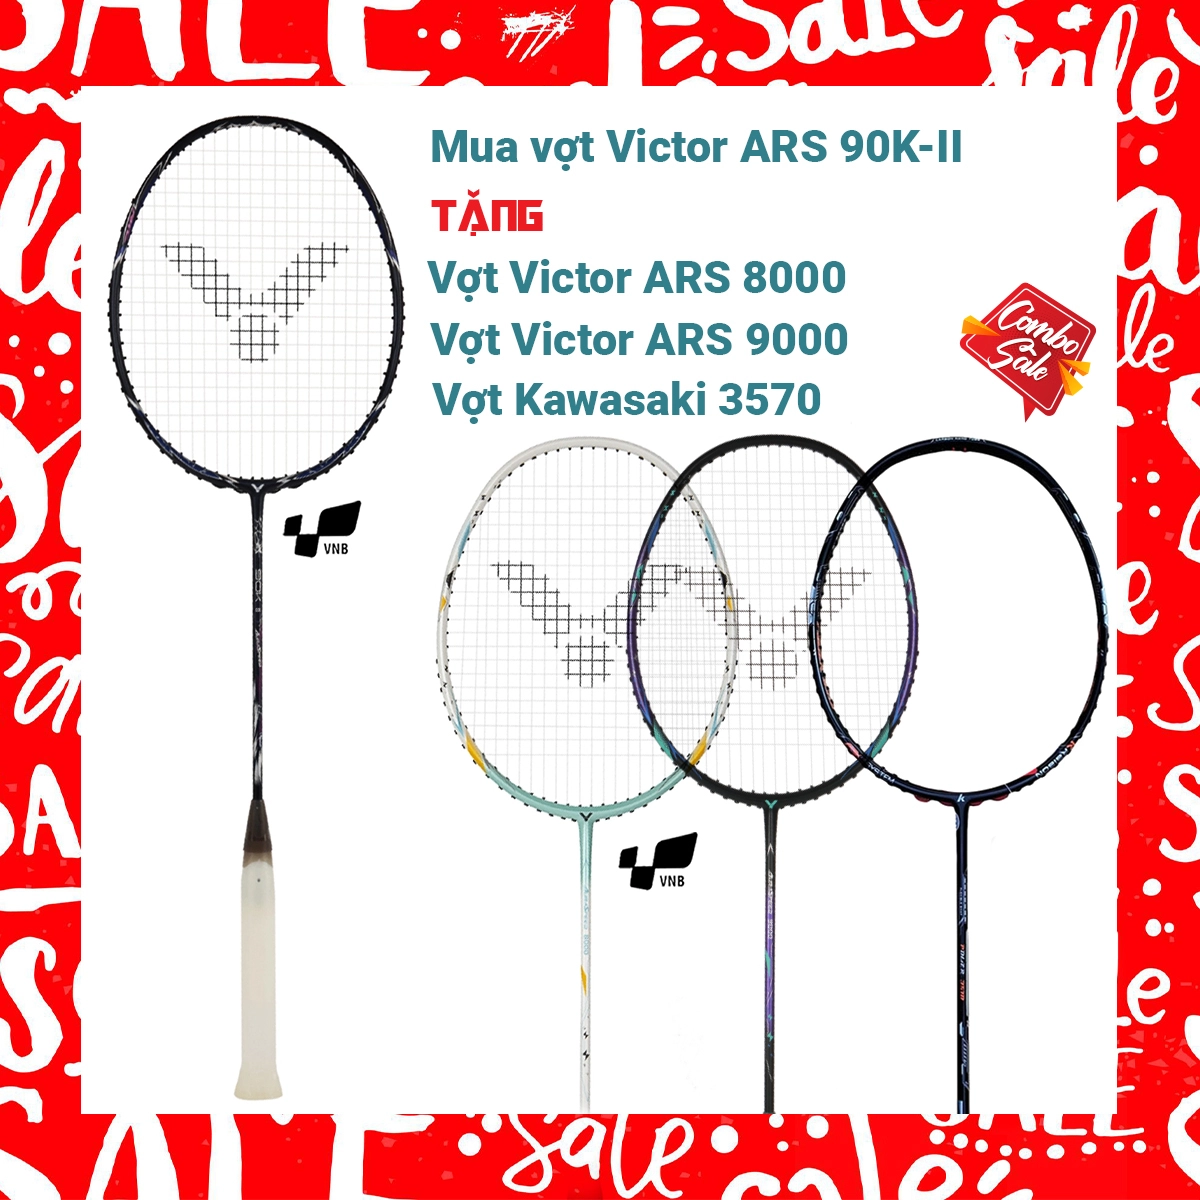 Combo mua vợt cầu lông Victor ARS 90K II tặng vợt Victor ARS 8000 + vợt Victor ARS 9000 + Vợt Kawasaki 3570